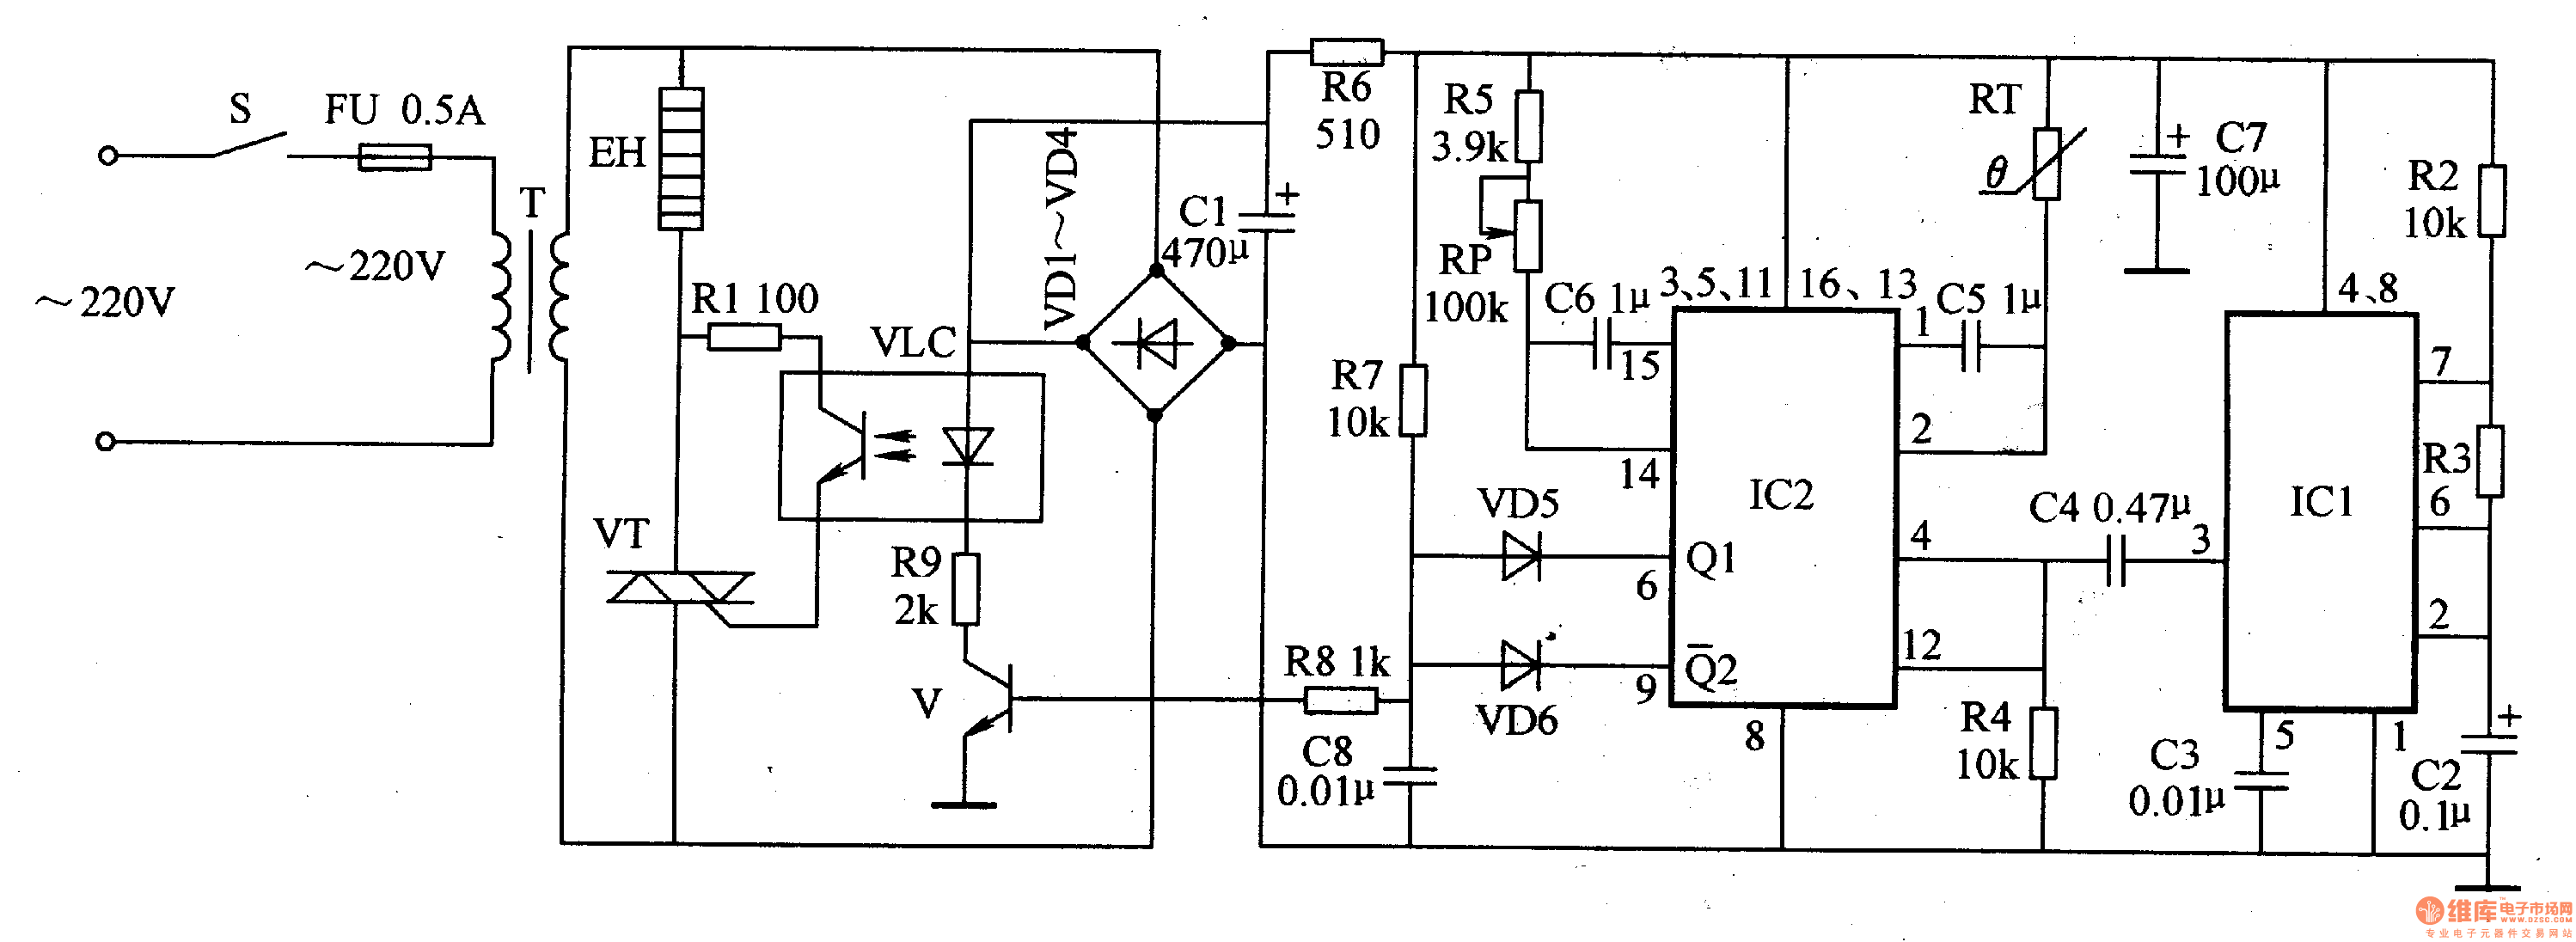 电路工作原理 该输液加温器电路首页 技术资料 电路图 其他电路图